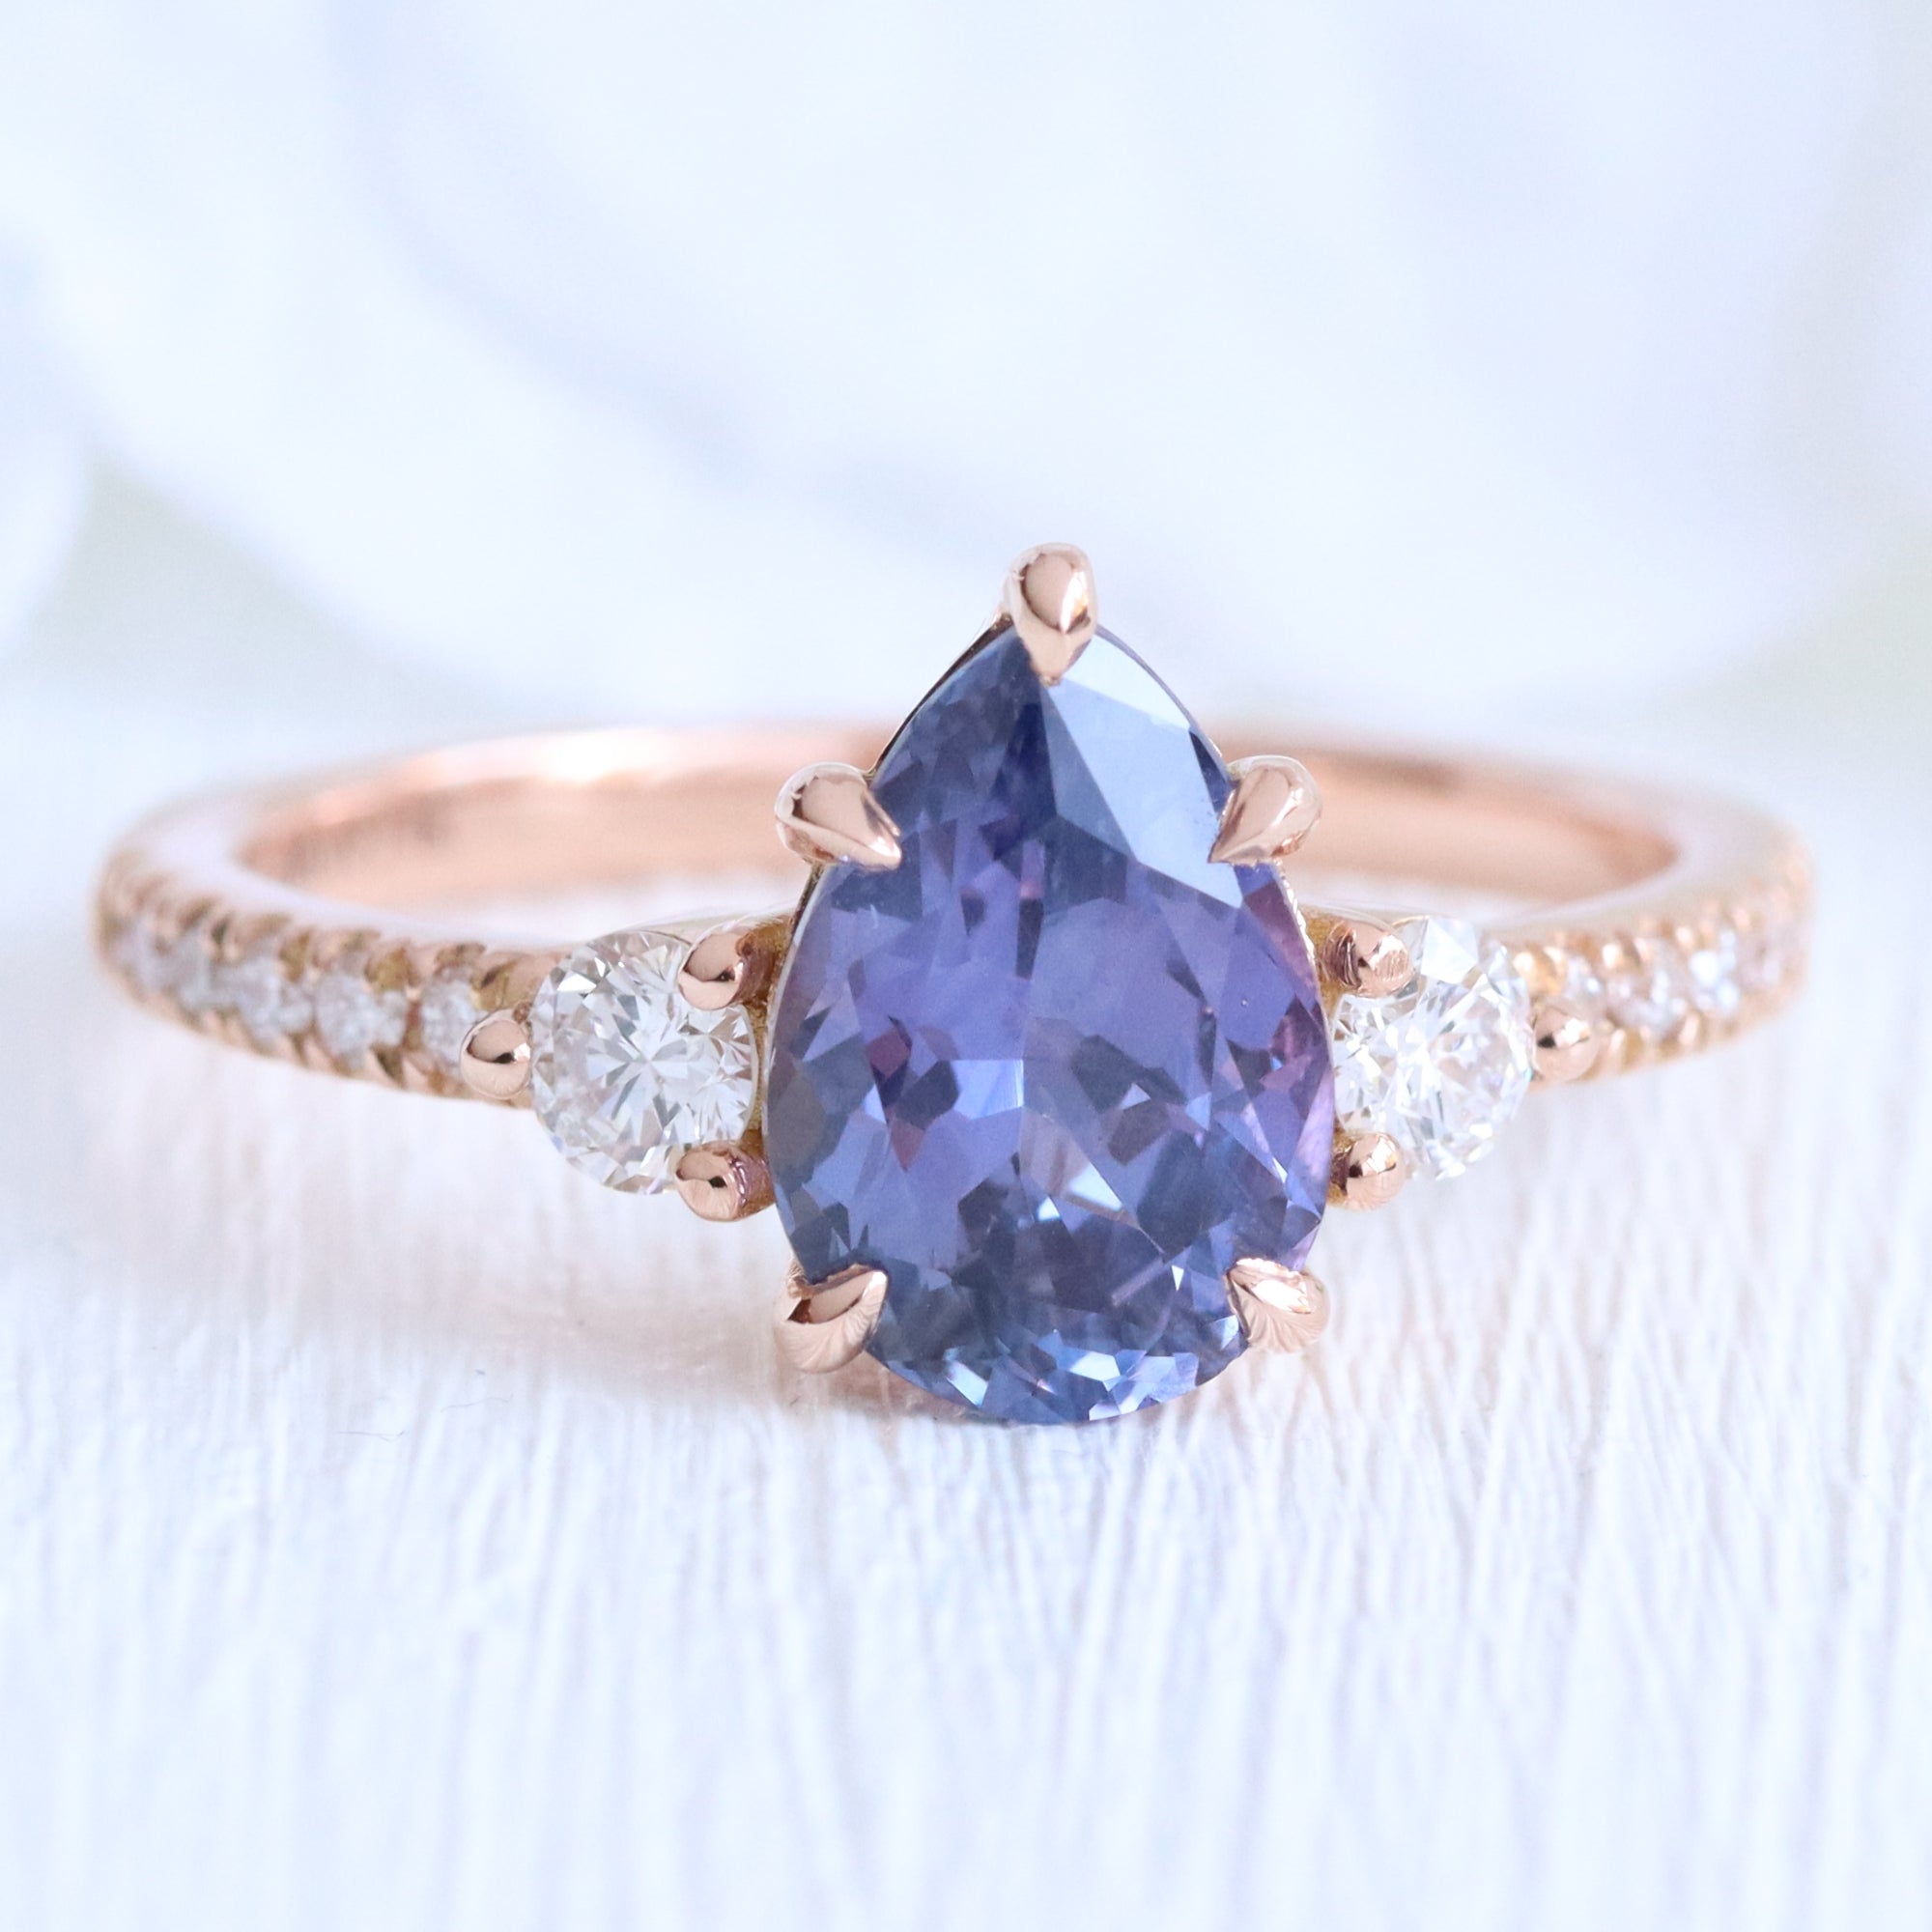 Pear purple sapphire ring rose gold 3 stone diamond ring la more design jewelry